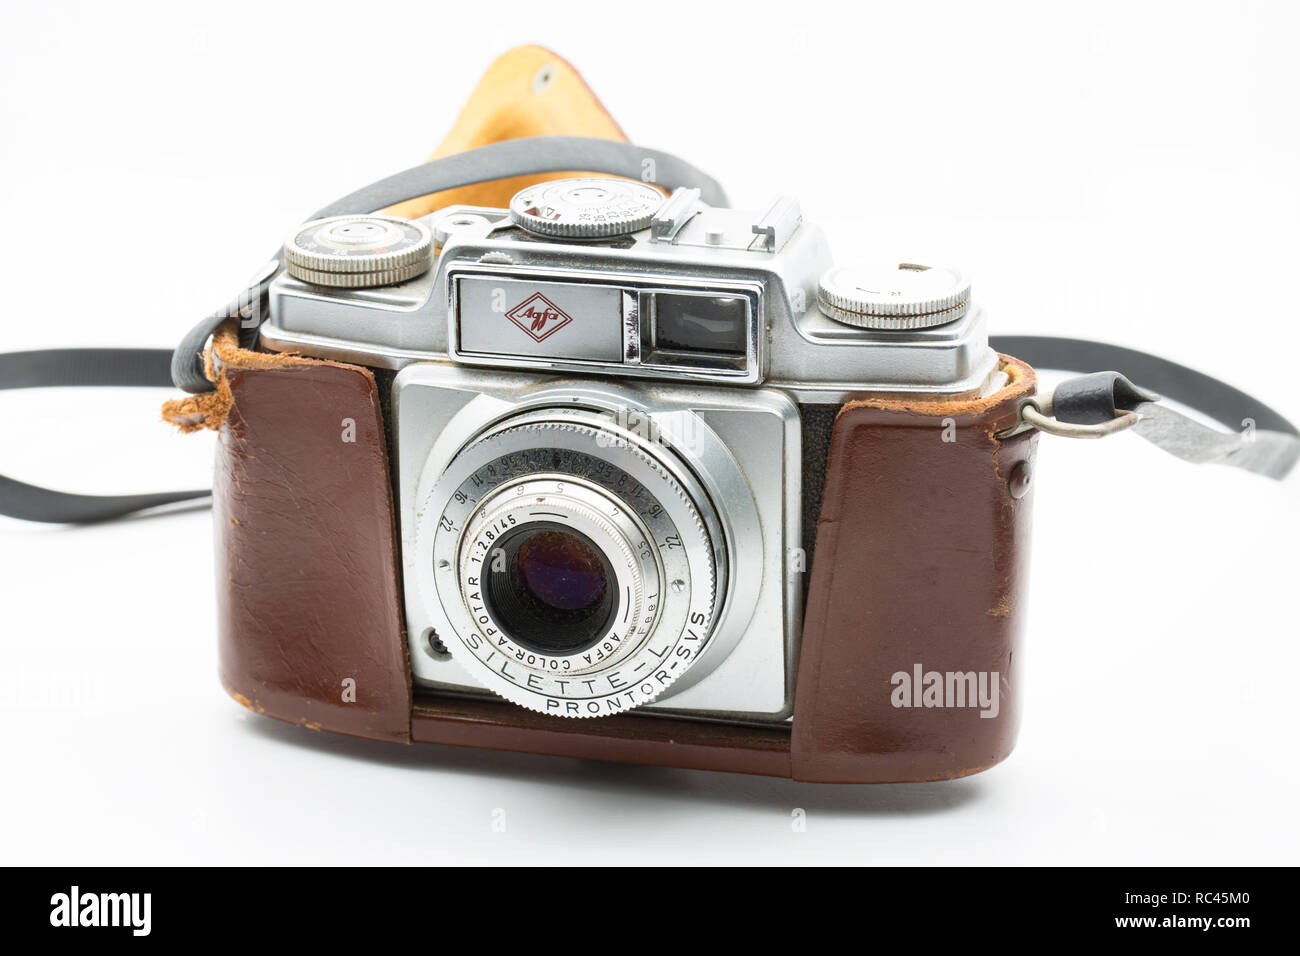 Agfa macchina fotografica a rullino afga vintage 